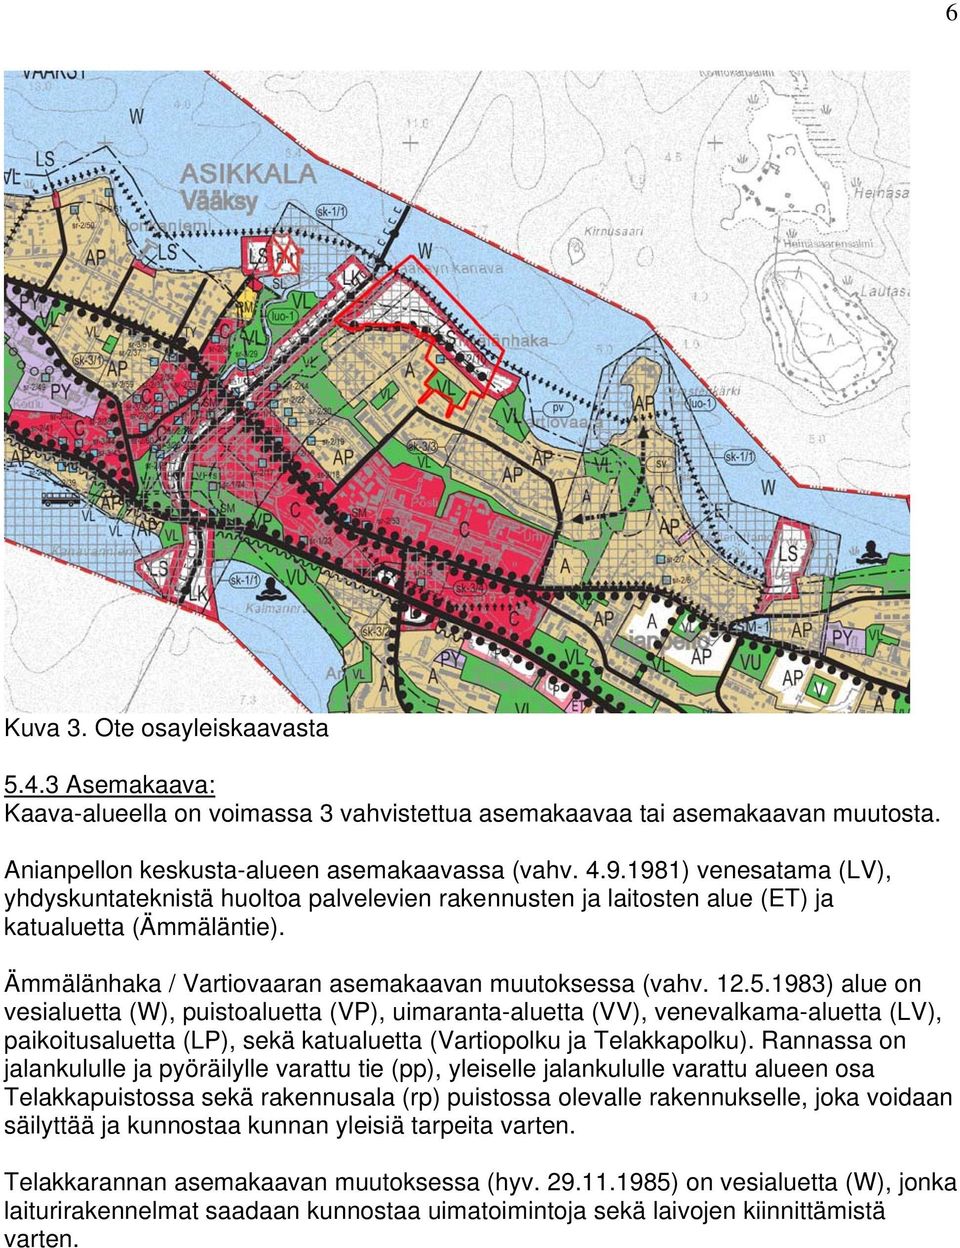 1983) alue on vesialuetta (W), puistoaluetta (VP), uimaranta-aluetta (VV), venevalkama-aluetta (LV), paikoitusaluetta (LP), sekä katualuetta (Vartiopolku ja Telakkapolku).